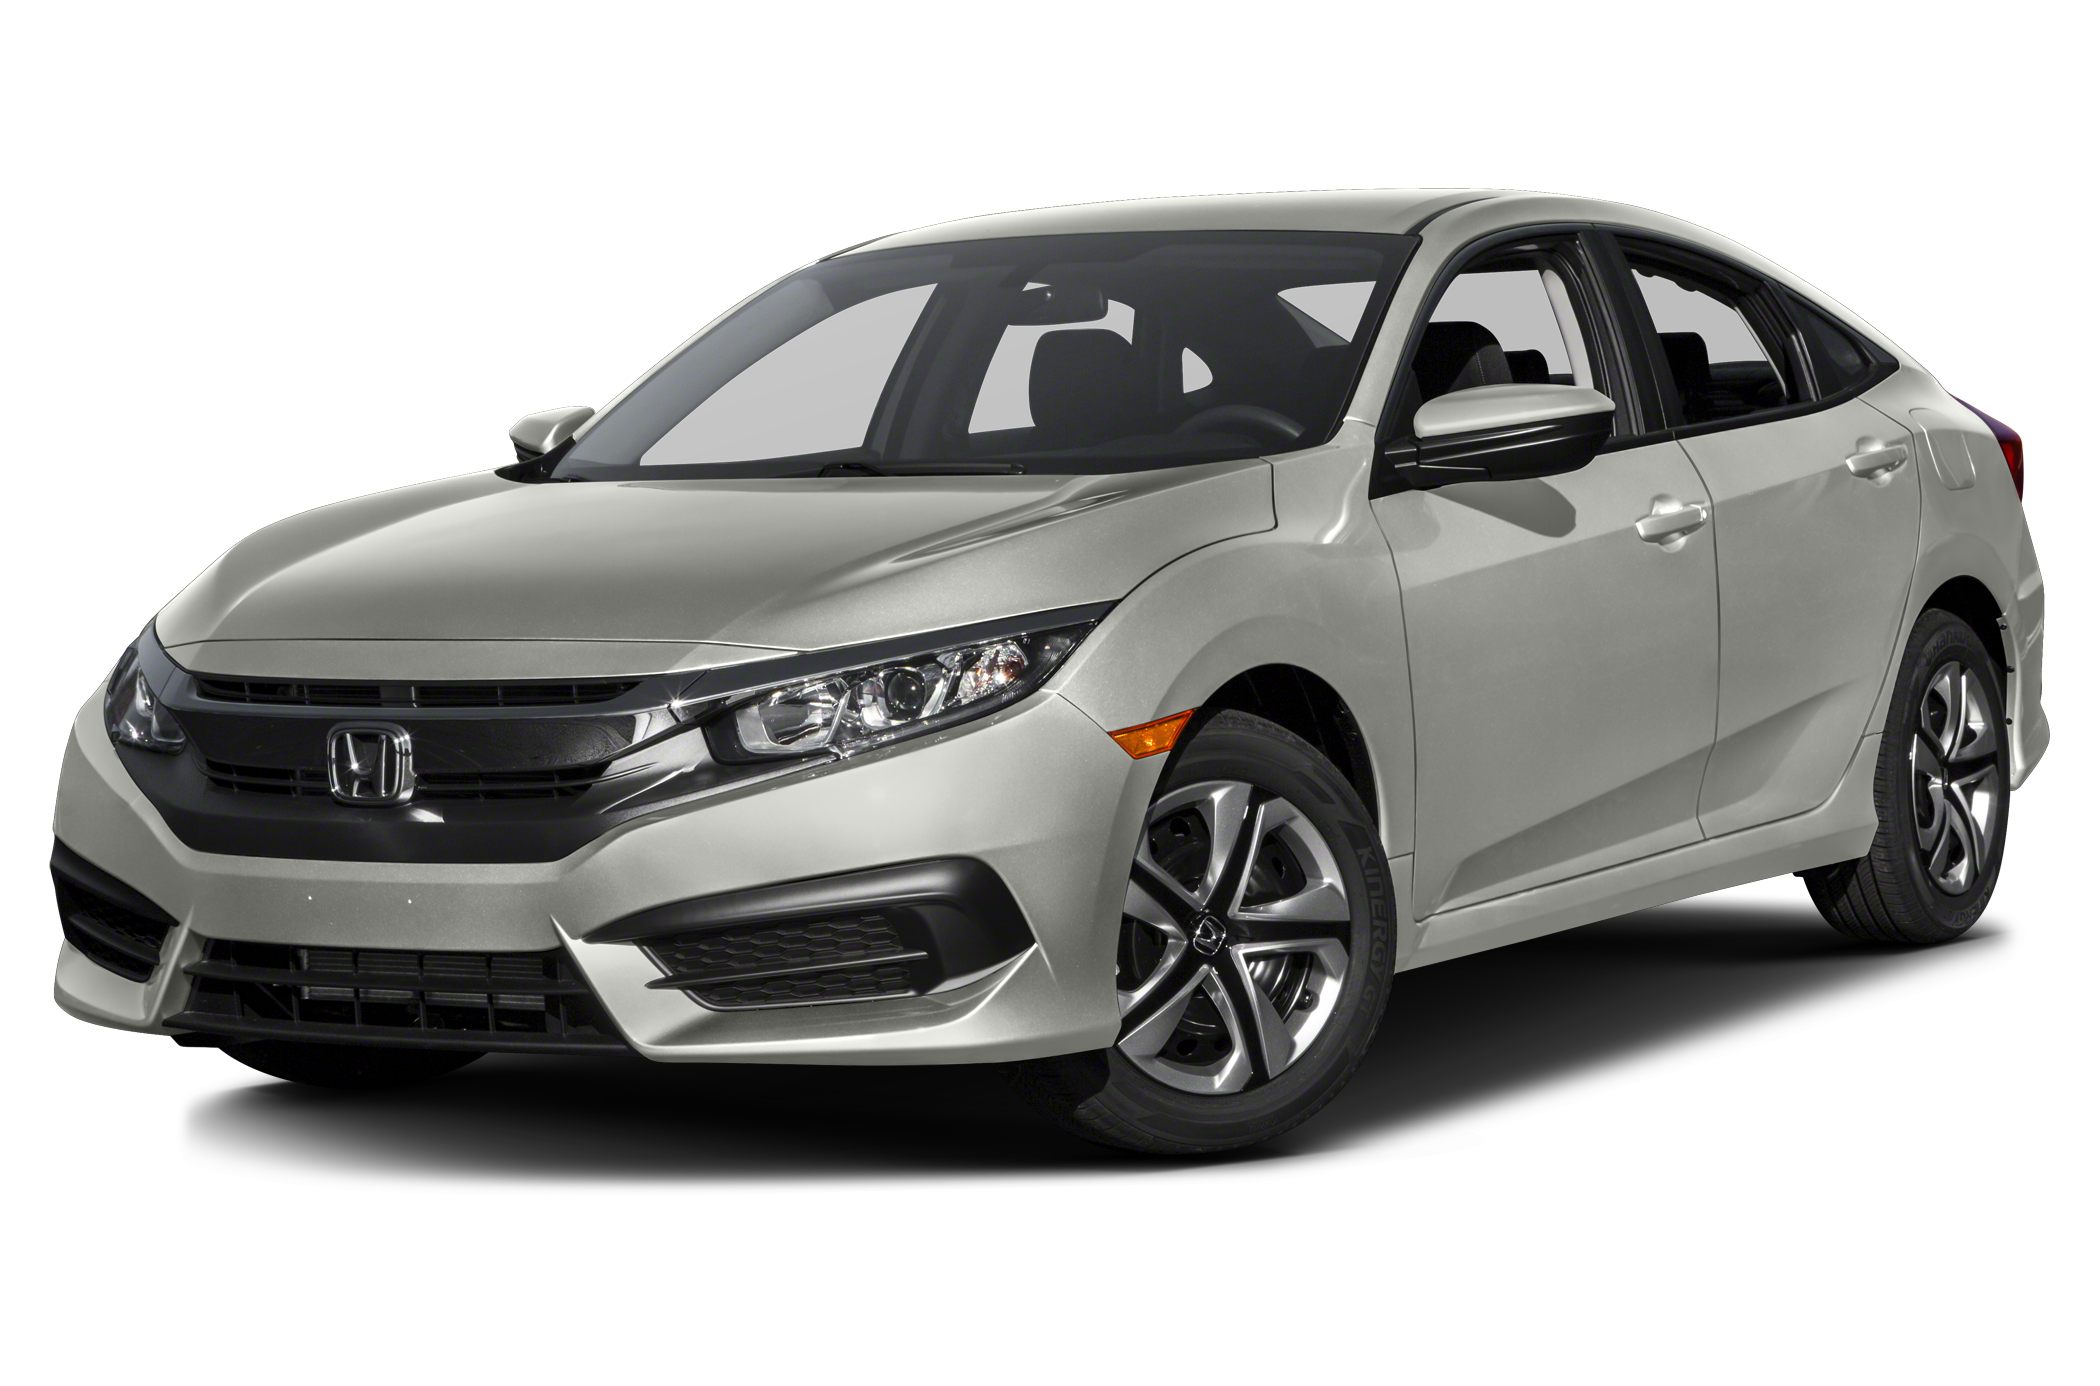 2016 Honda Civic Owner Reviews And Ratings